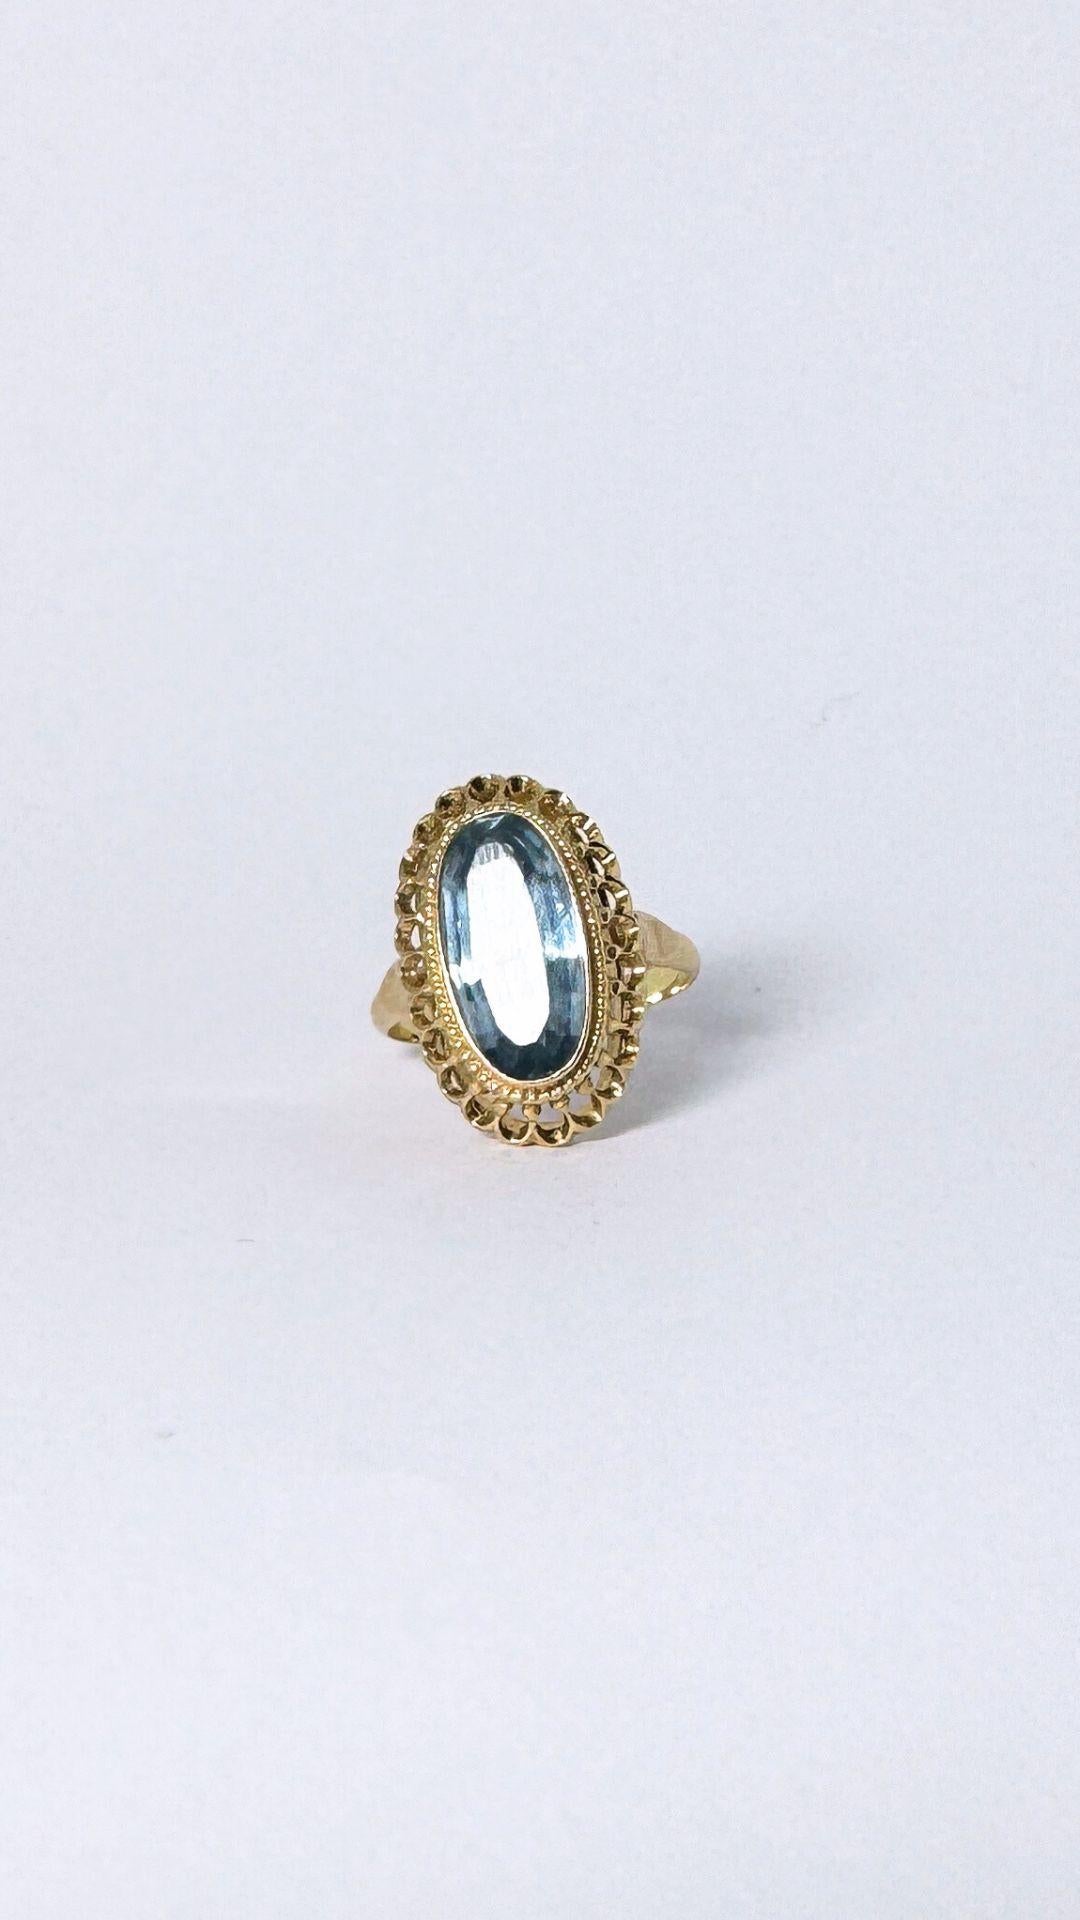 Absolut adore diese pre-loved Ring. Sehen Sie sich das Design und die Eleganz dieses Schmuckstücks an. Dieser Ring ist aus Gelbgold, 14 Karat und ist mit einem ovalen facettierten synthetischen Spinell von ca. 5,54 ct. Der Spinell ist in einer